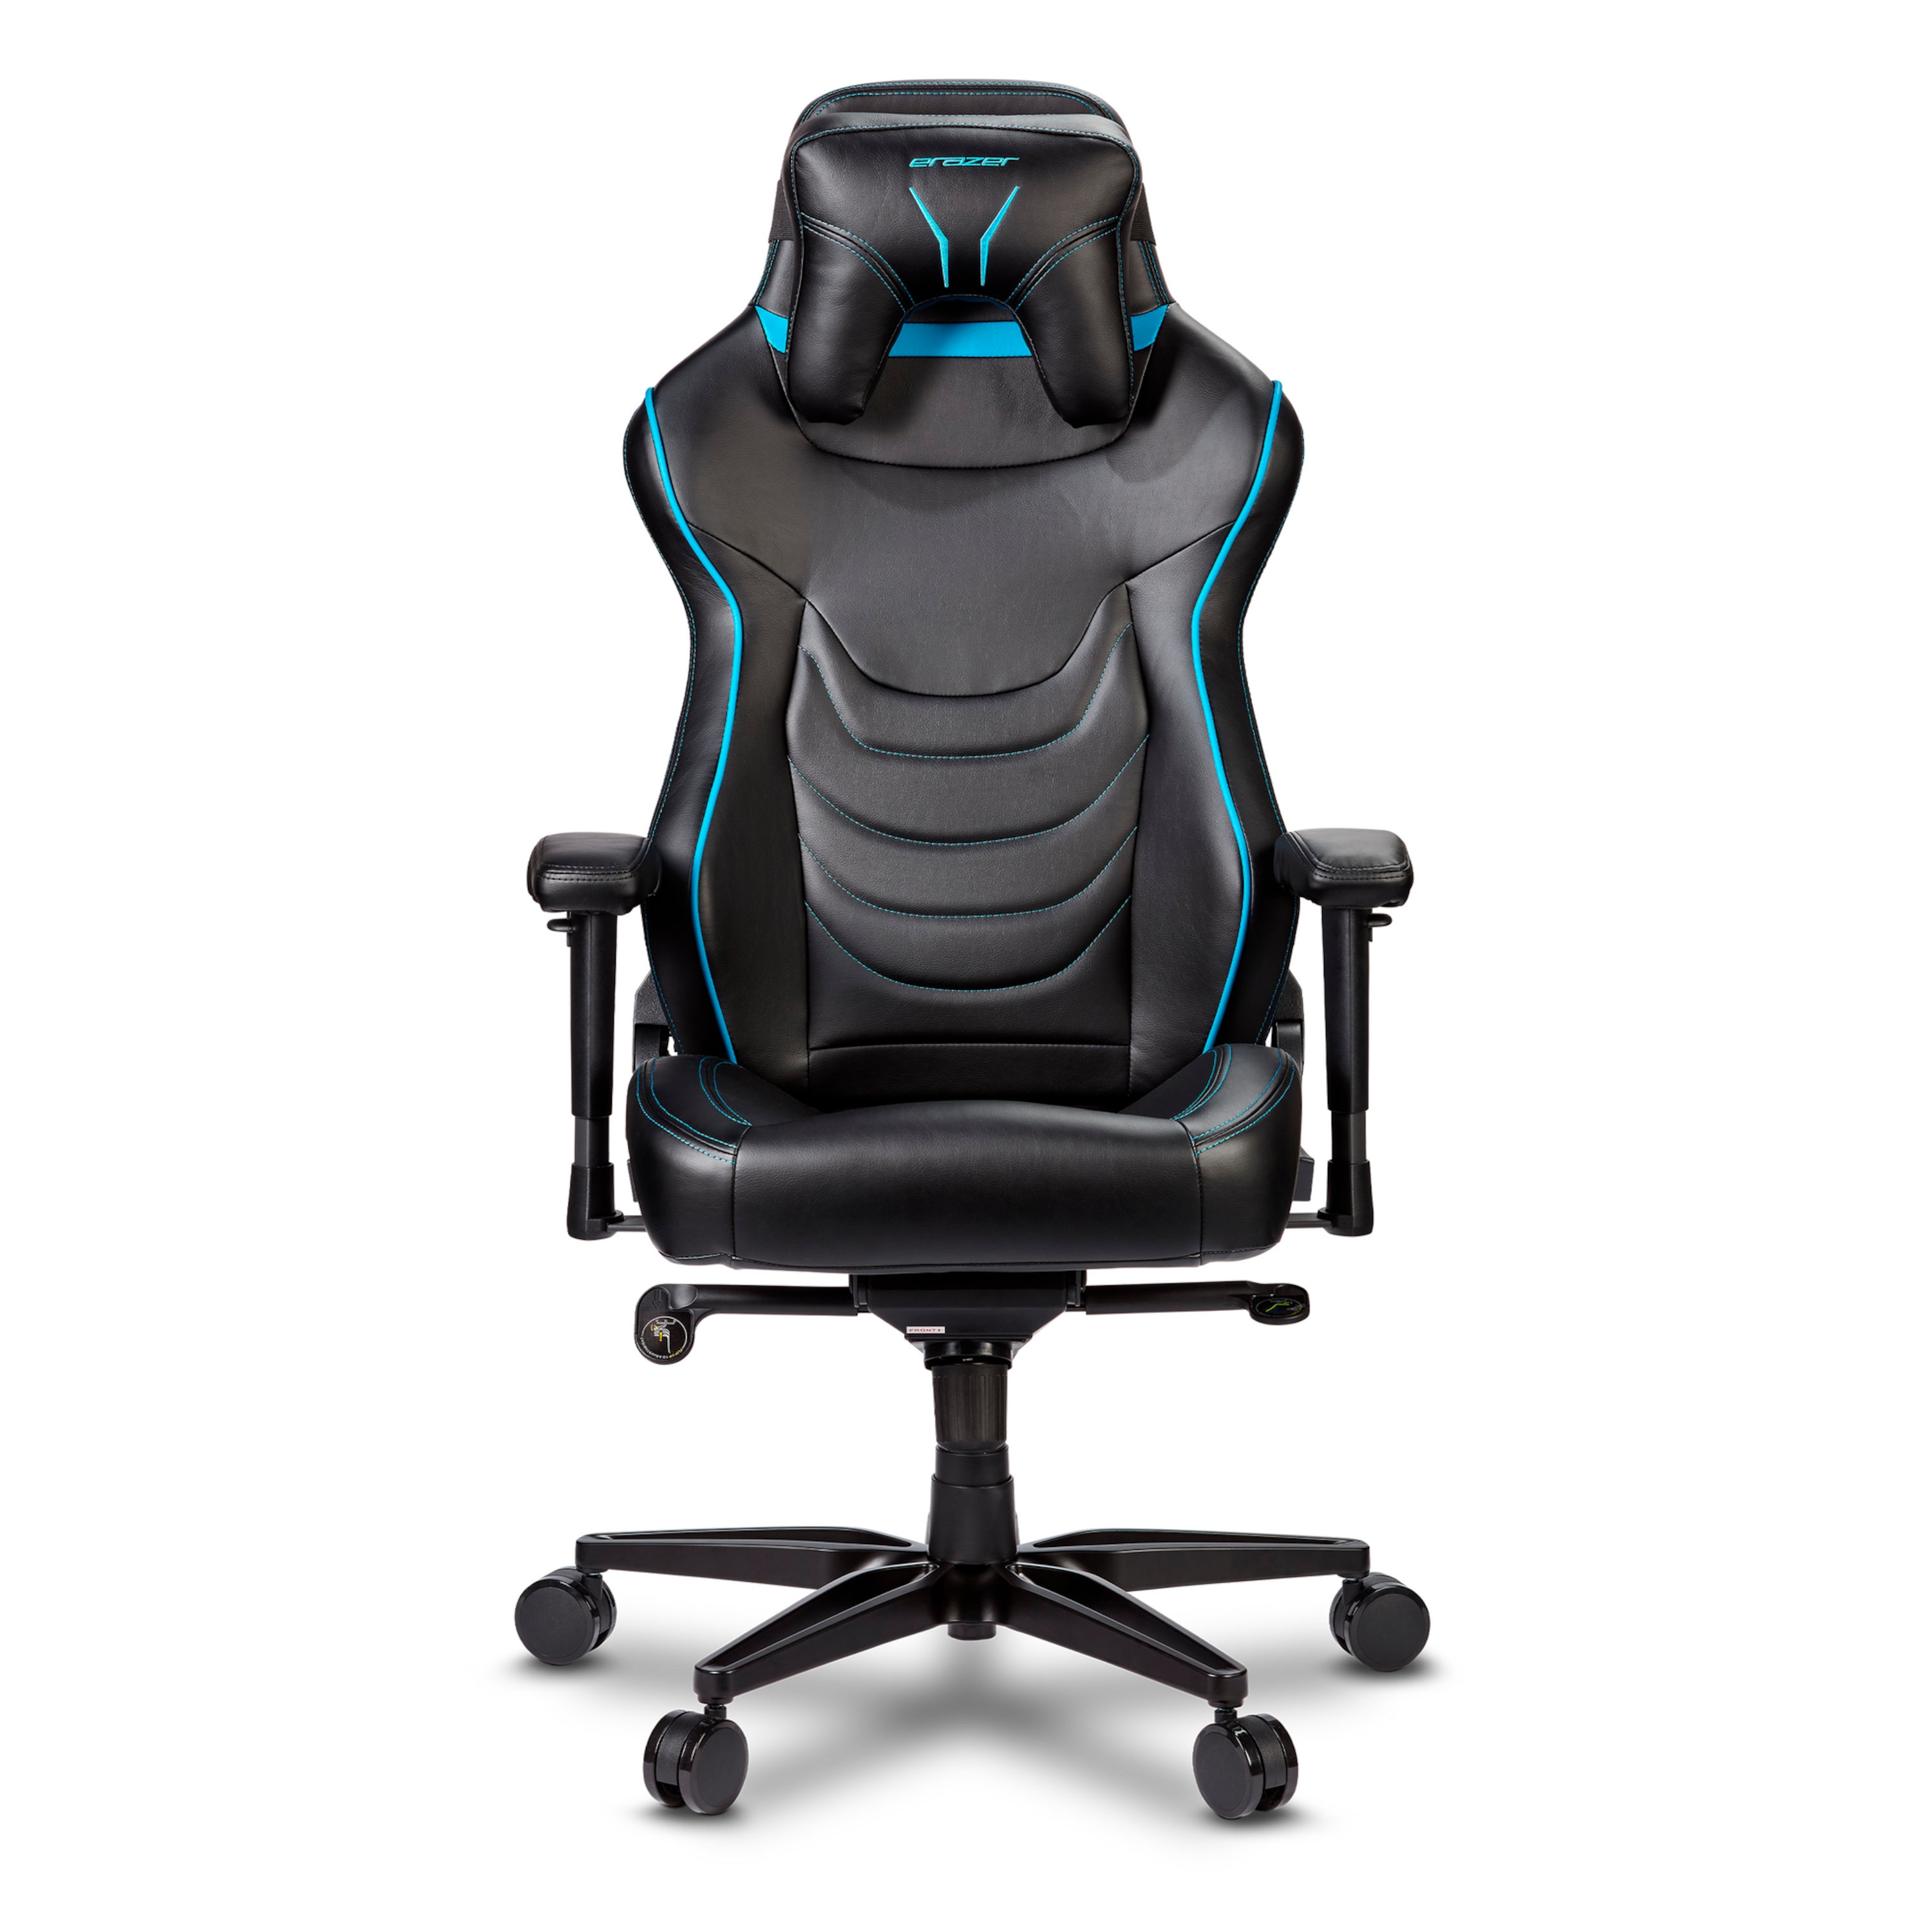 ERAZER Druid X10 Gaming stoel | Hoog zitcomfort | Sportieve look | Afneembaar hoofdkussen